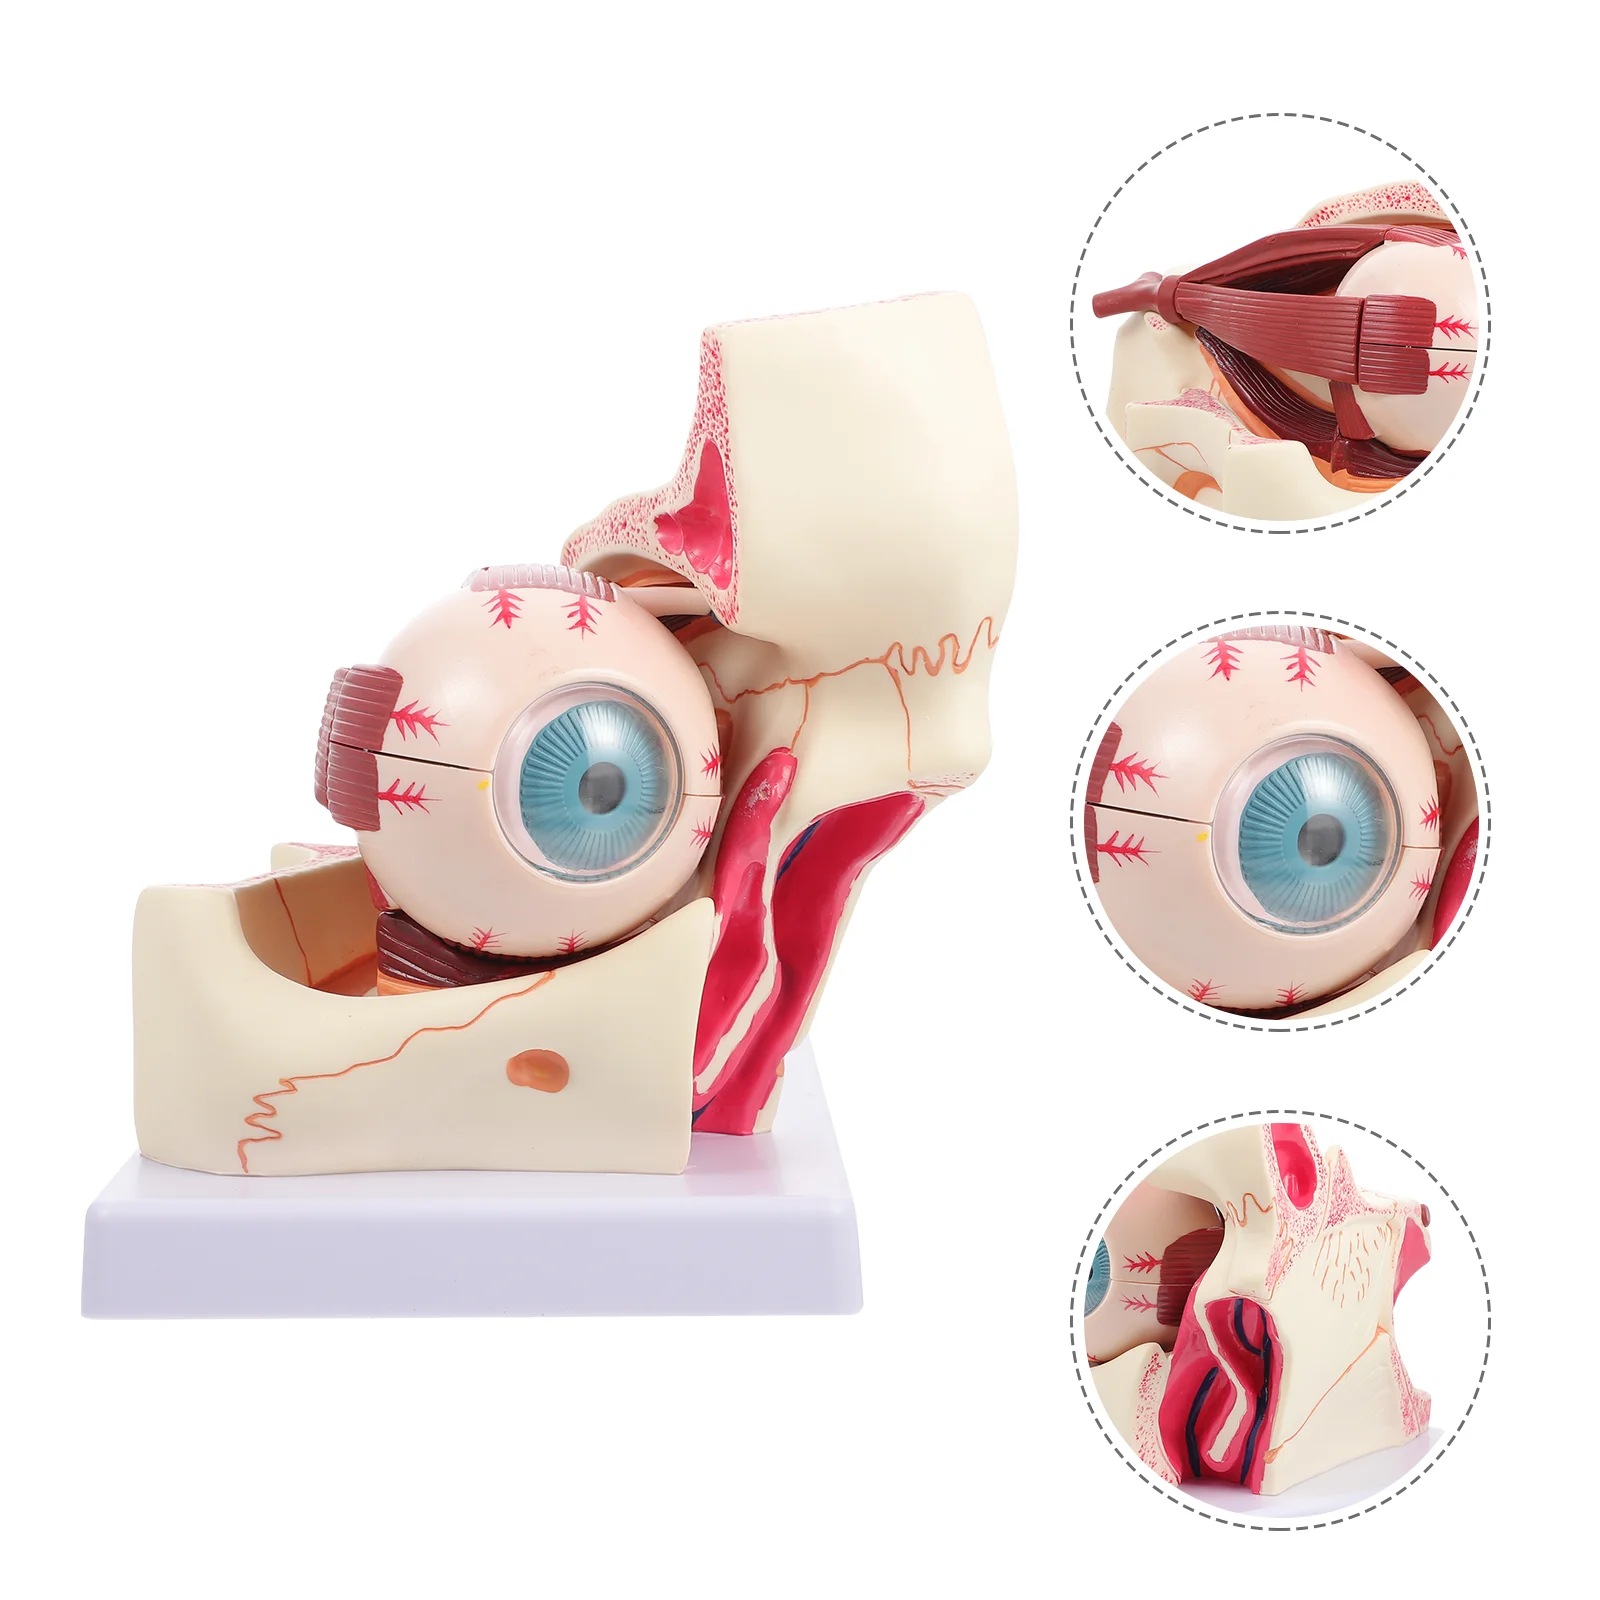 

Модель для глаз медицинский патологический обучающий манекен для анатомии глазного яблока увеличенный человеческий анатомический аппарат из ПВХ модели роговицы